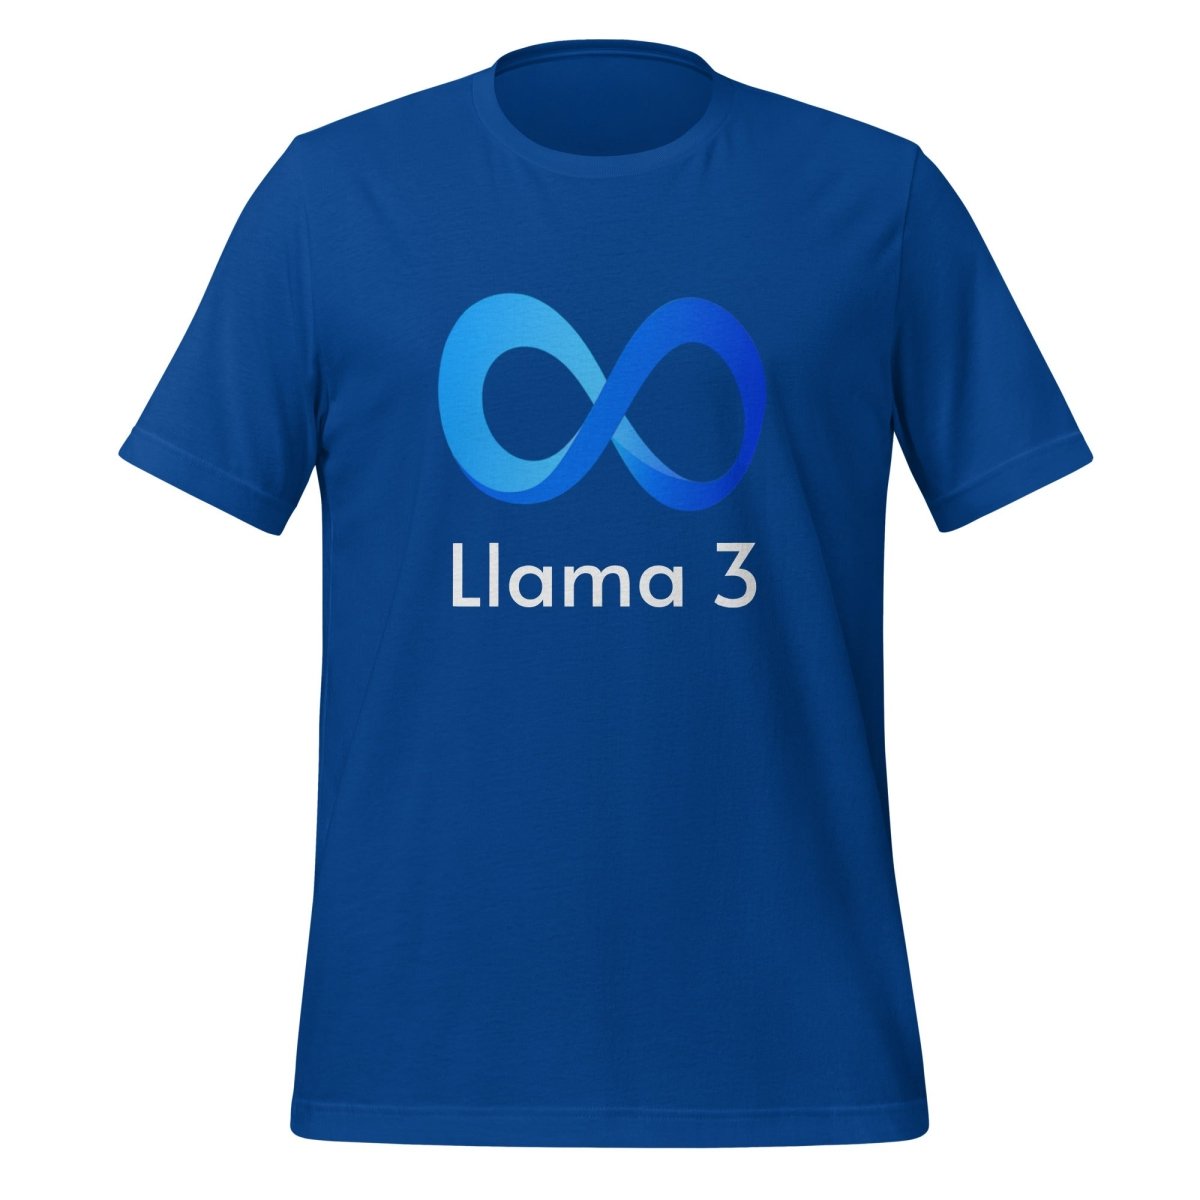 Llama 3 T - Shirt (unisex) - True Royal - AI Store